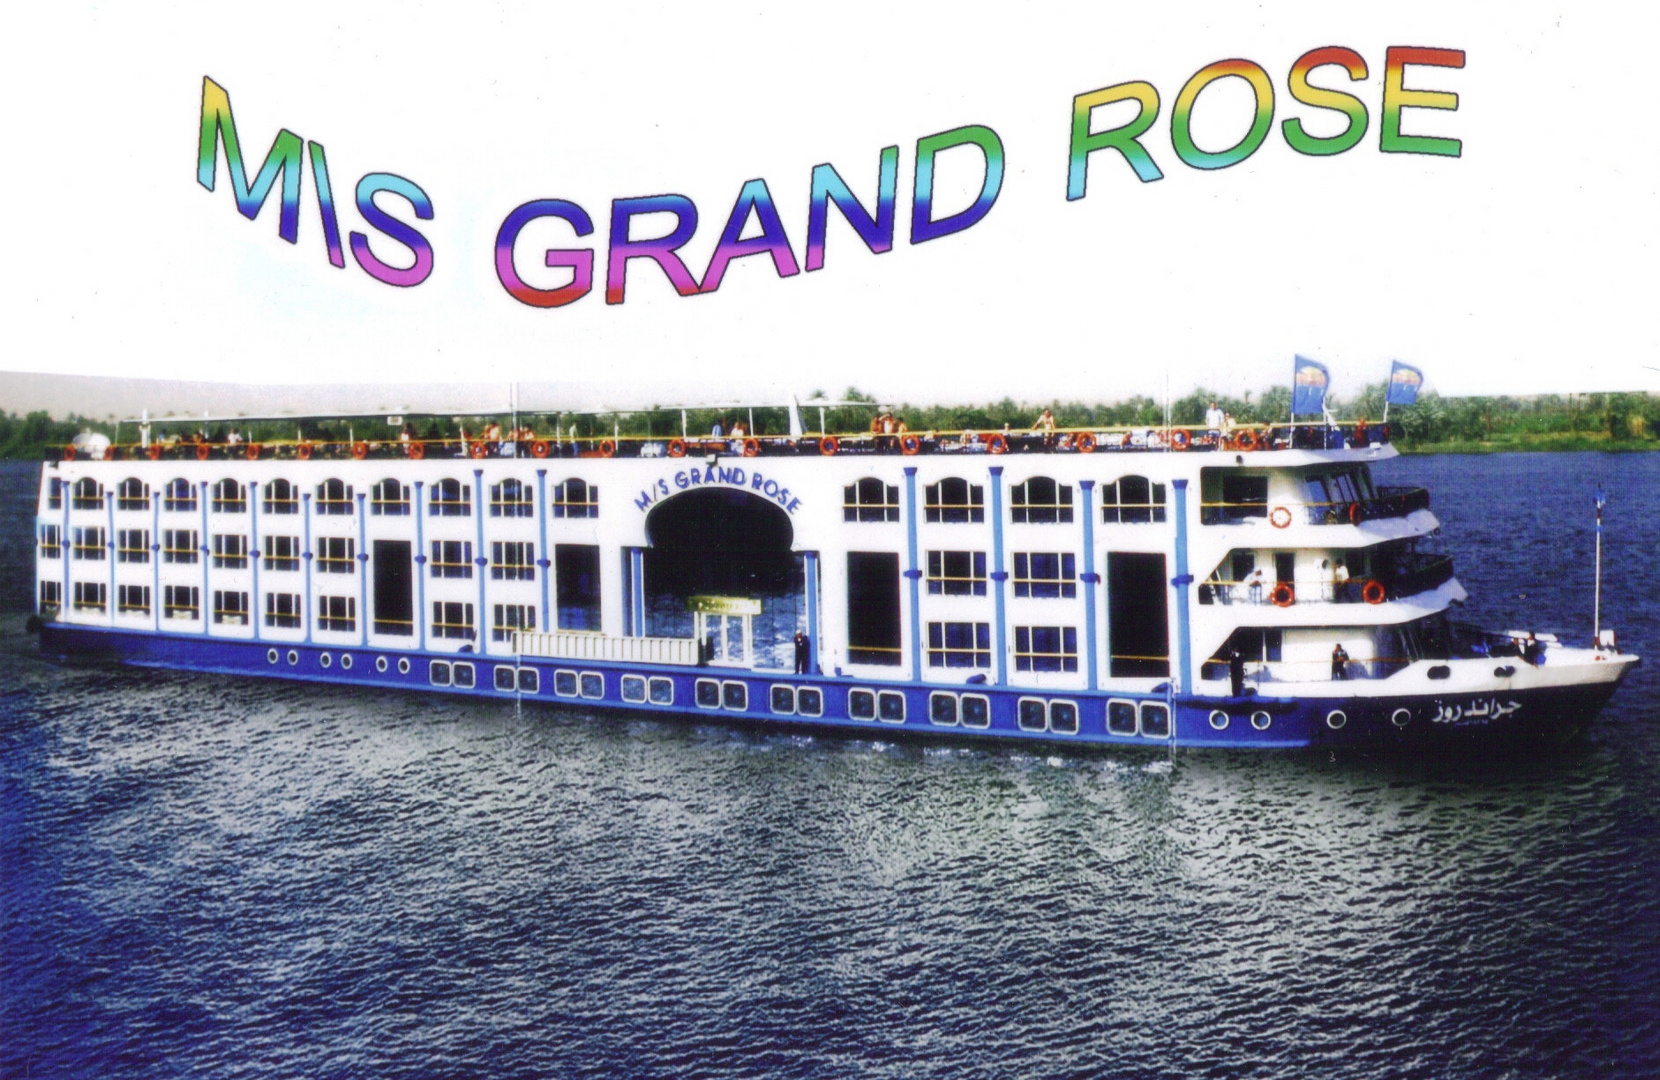 Grand Rose das ist unser Schiff